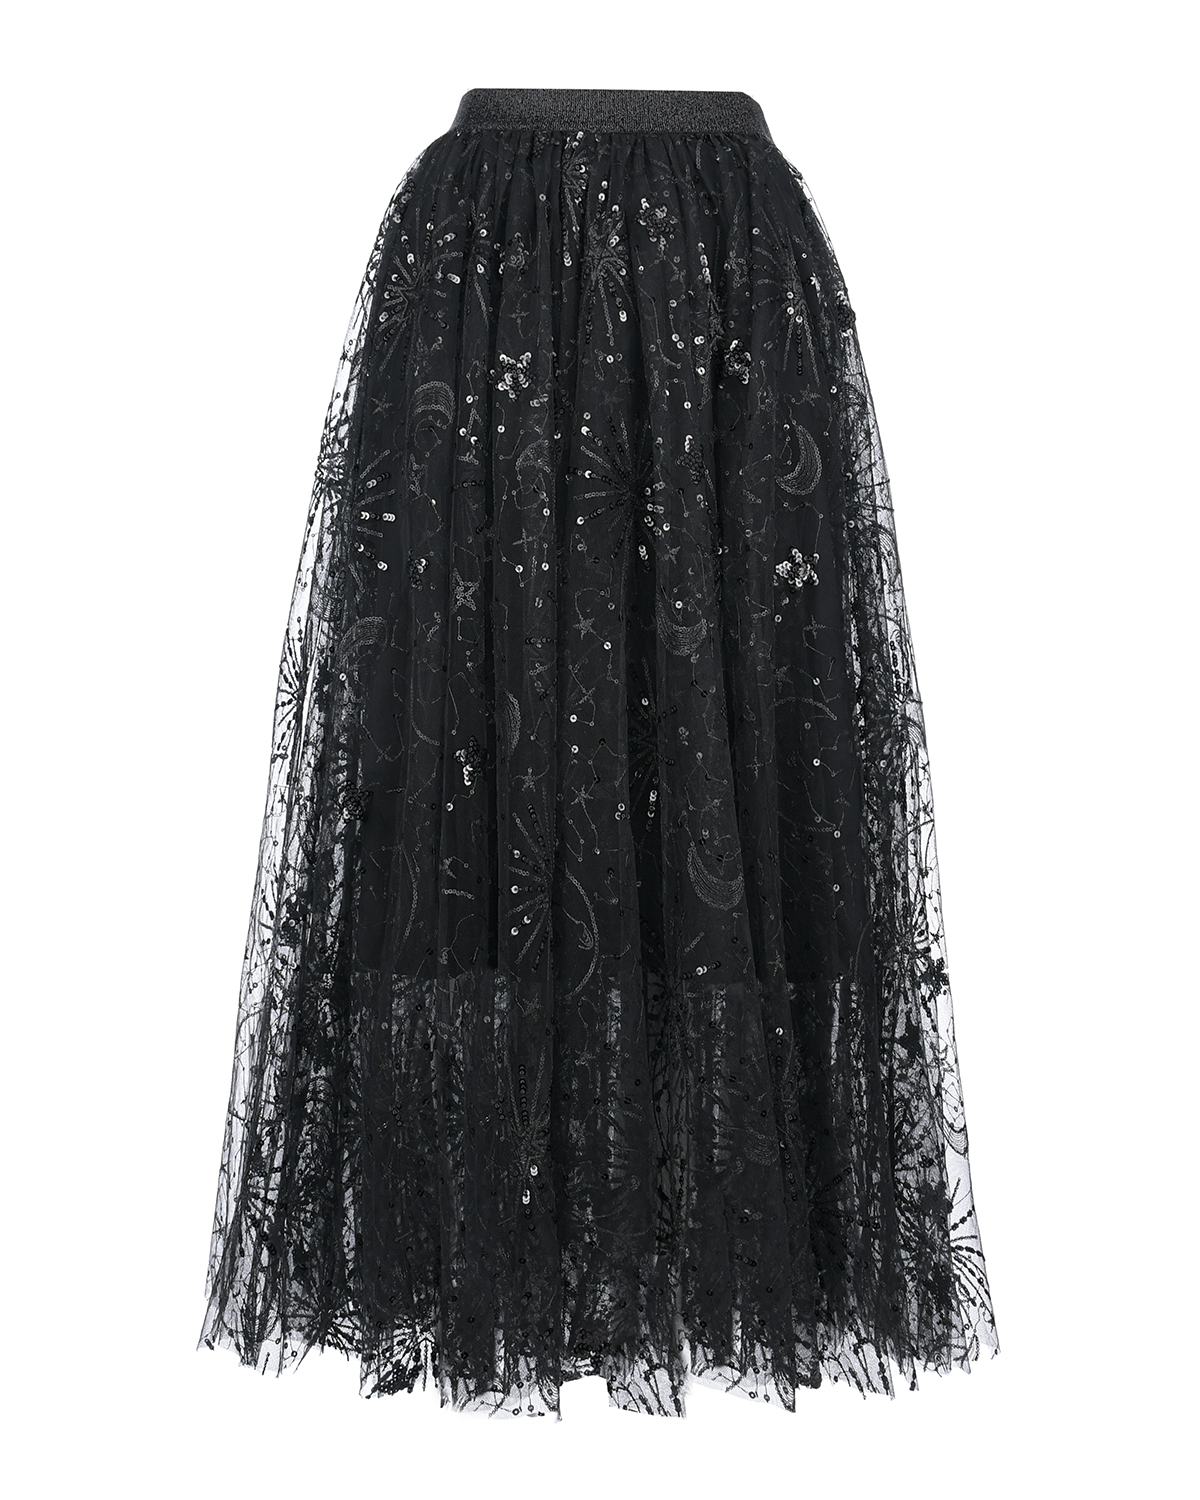 Черная юбка с пайетками Dan Maralex, размер 42, цвет черный - фото 1